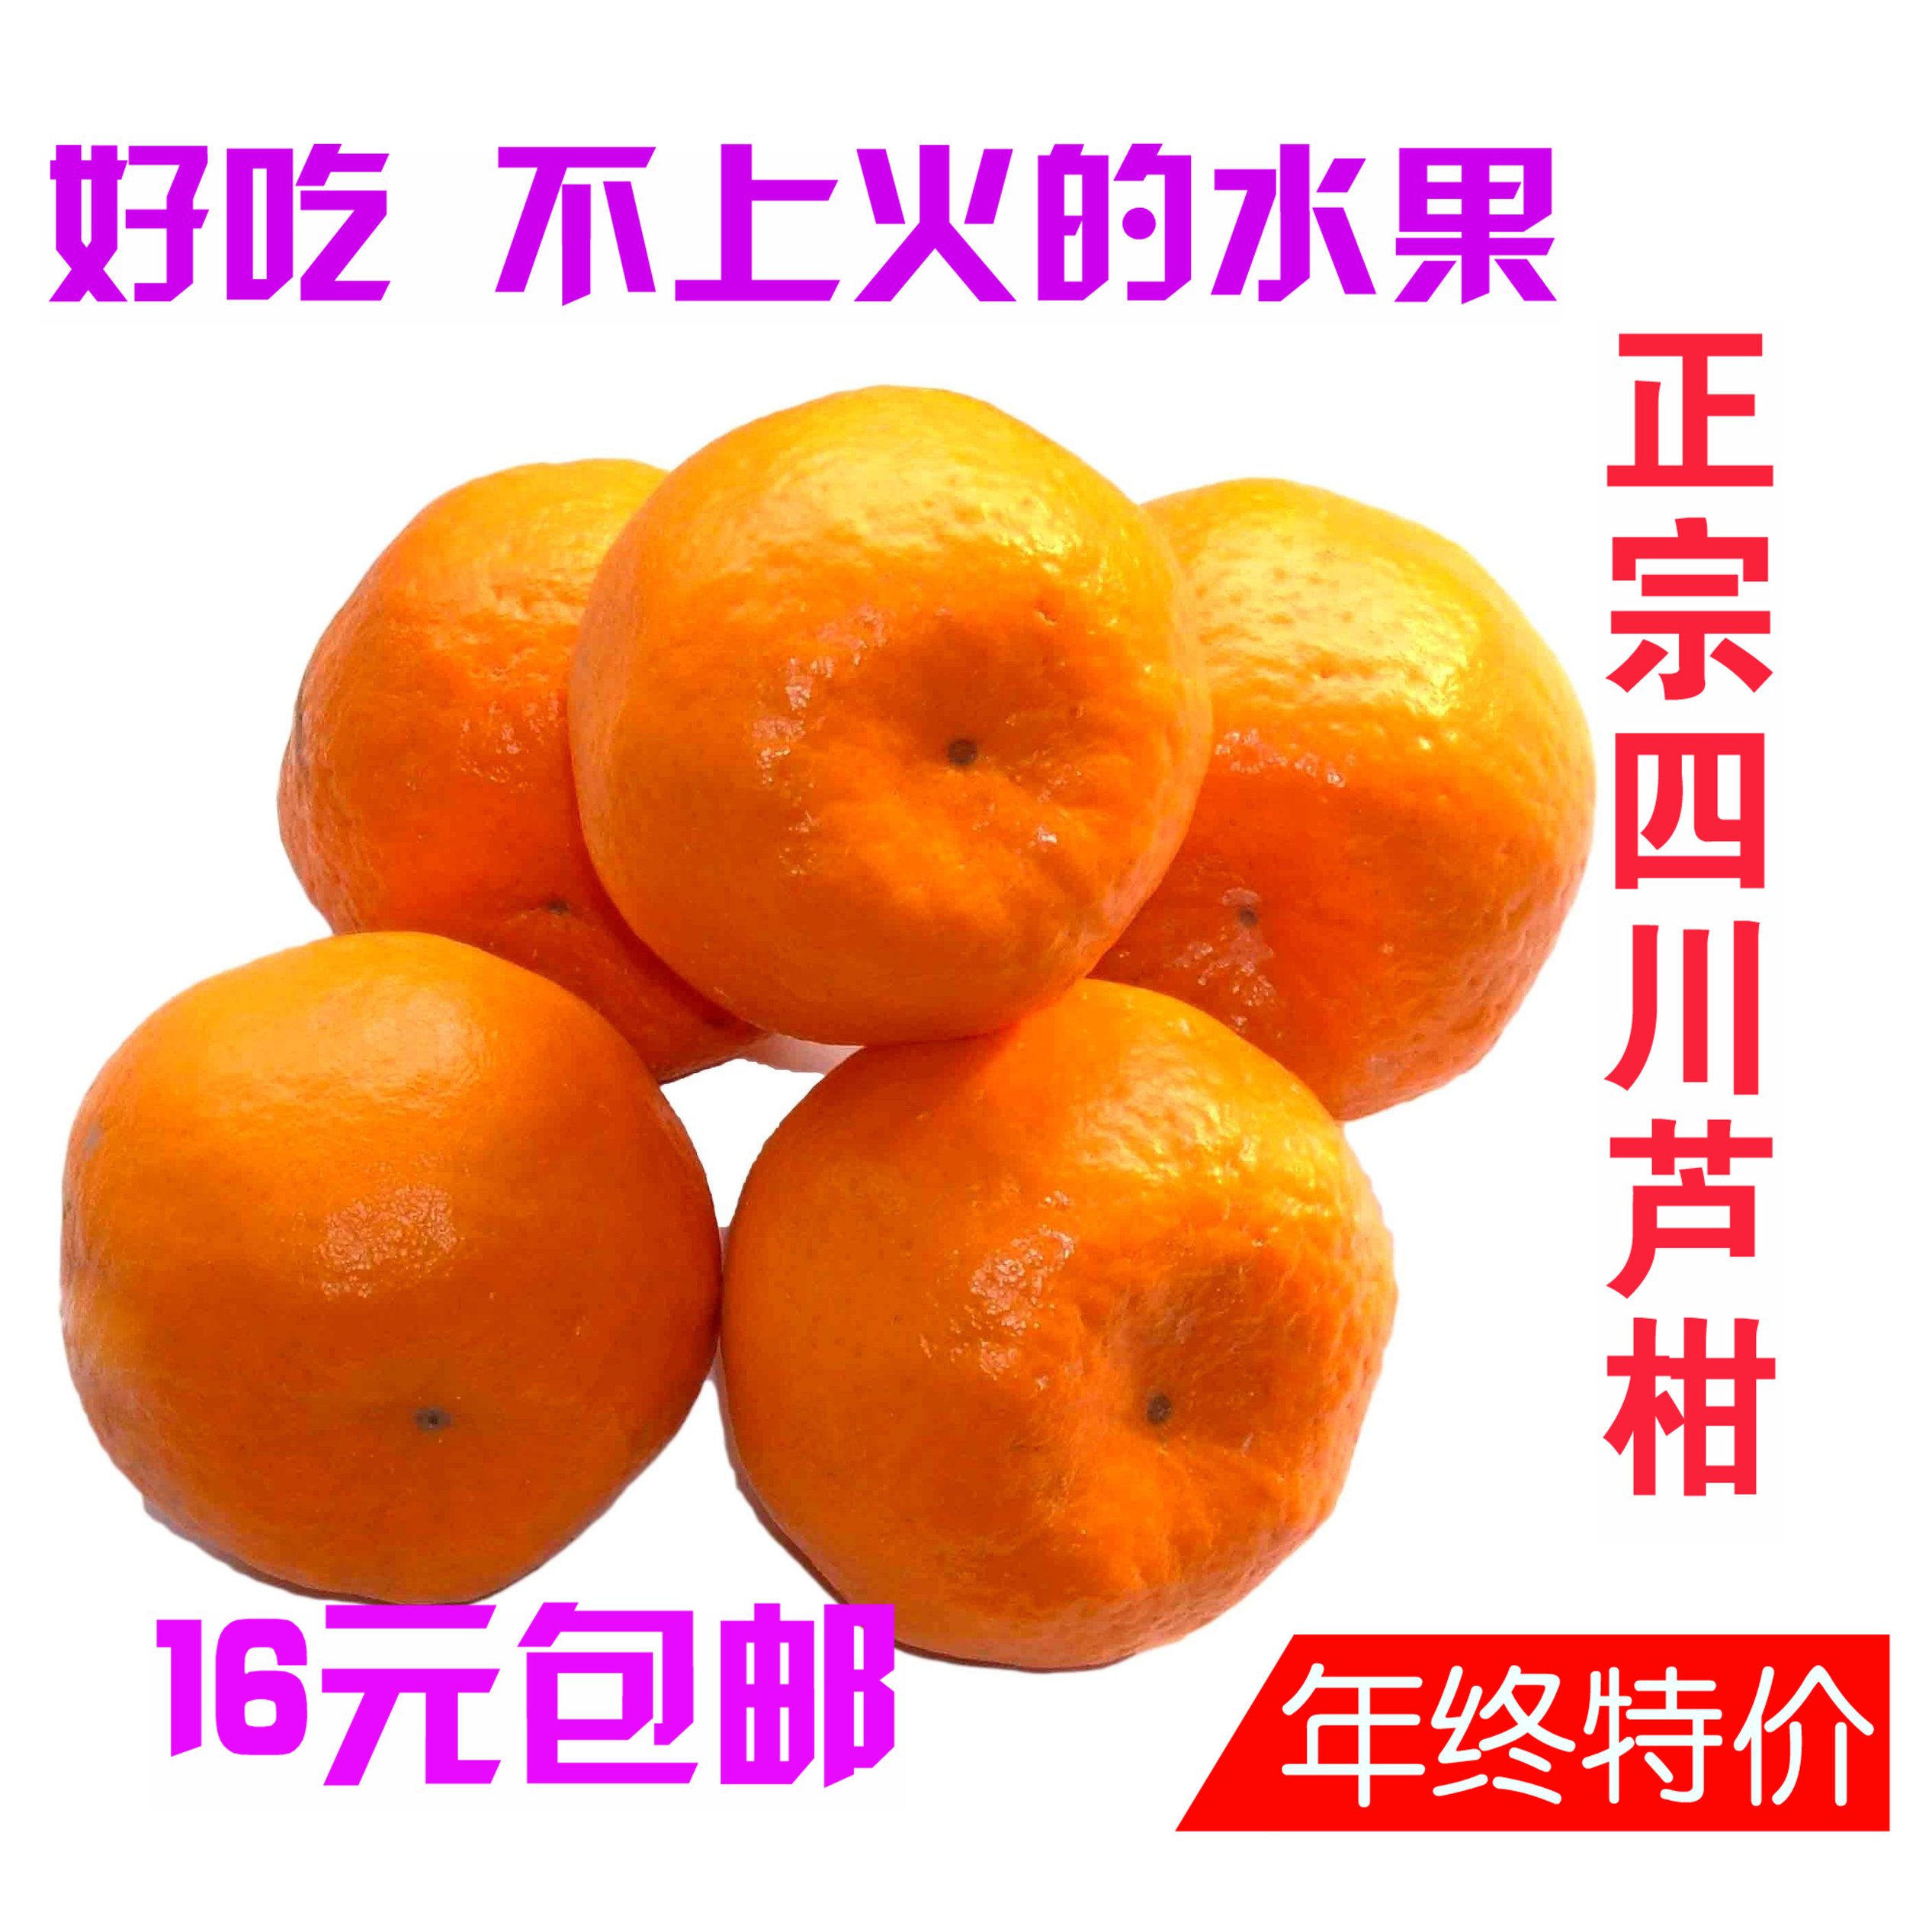 四川特价新鲜水果 芦柑 椪柑橘子桔子 4斤16元包邮 易剥 纯甜